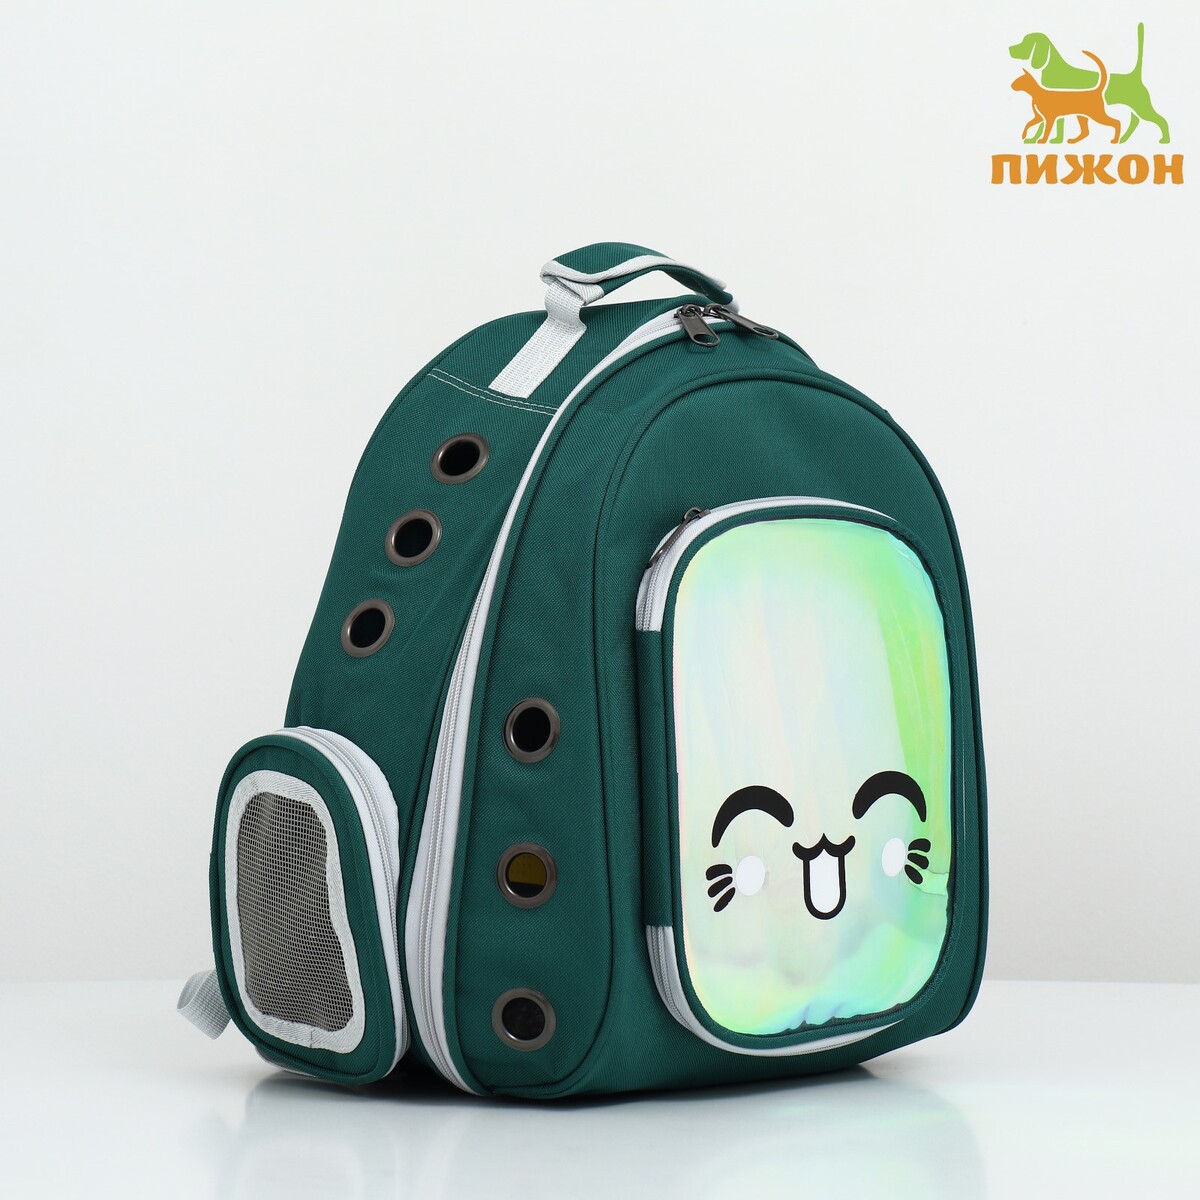 Рюкзак для переноски животных с окном для обзора, зеленый рюкзак для переноски животных прозрачный 31 х 28 х 42 см зеленый